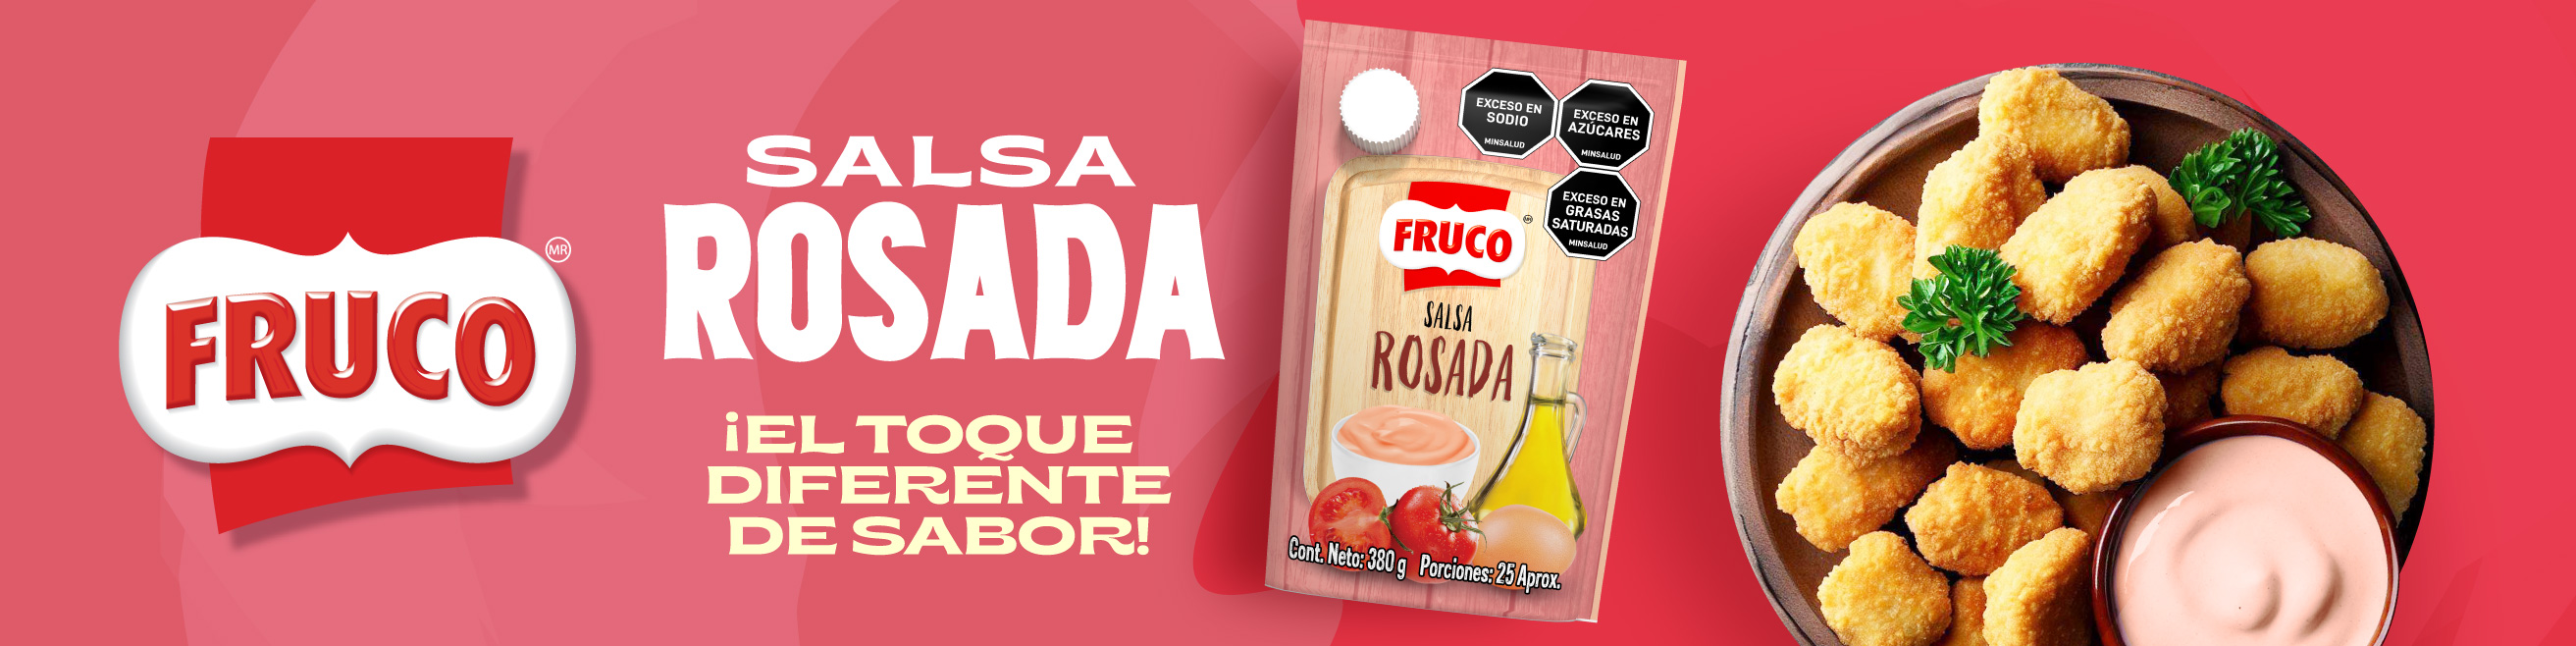 Salsa Rosada